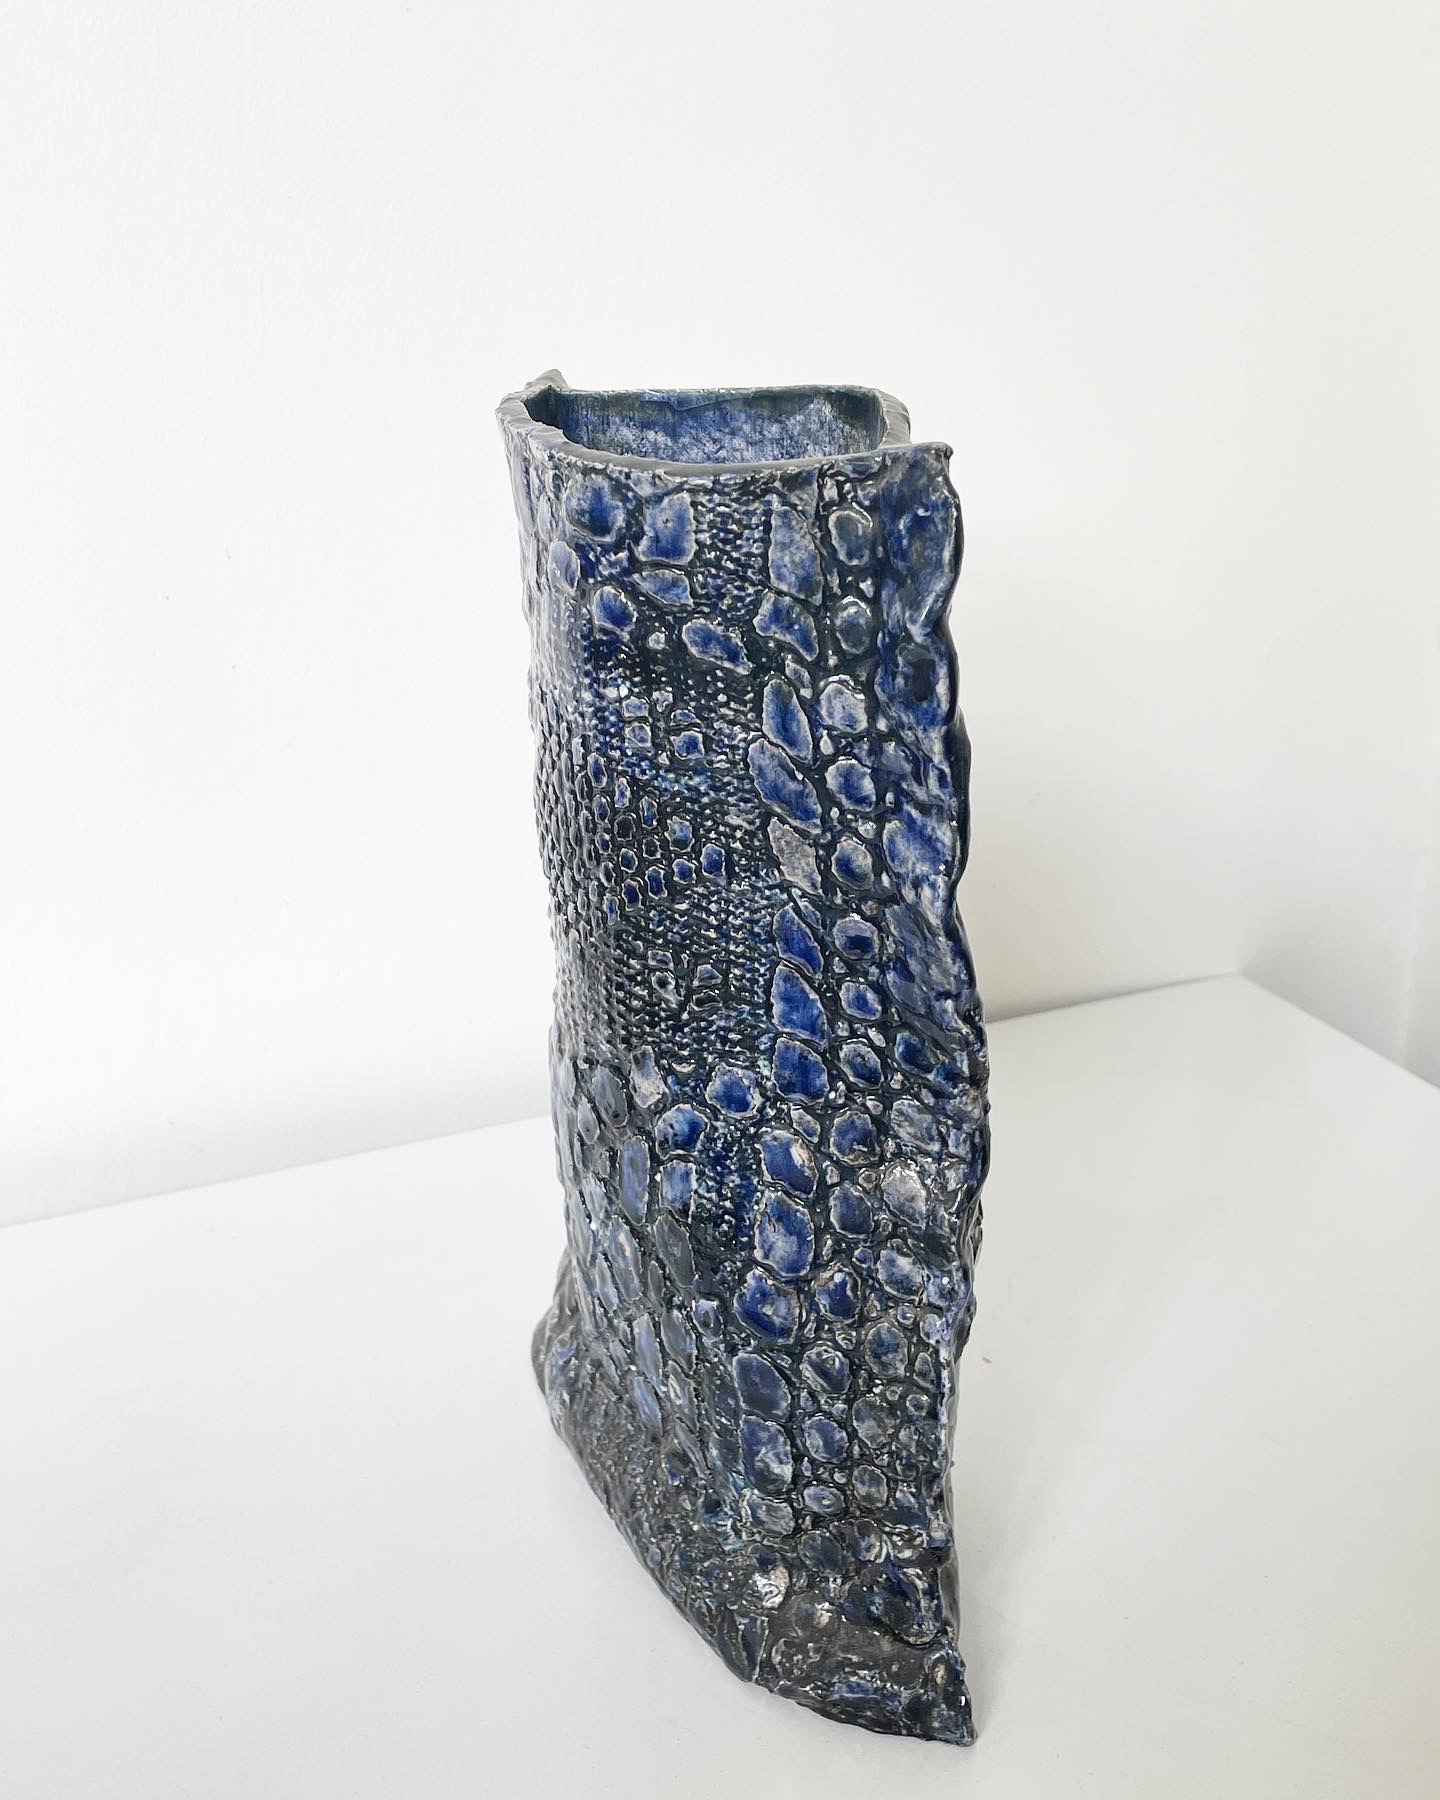 Monica-Catillana-céramique-liège-chili-femme-antiquaire-expert-liège-paris-aurore-morisse-affaire-conclue-estimation-art-contemporain-objets-anciens82